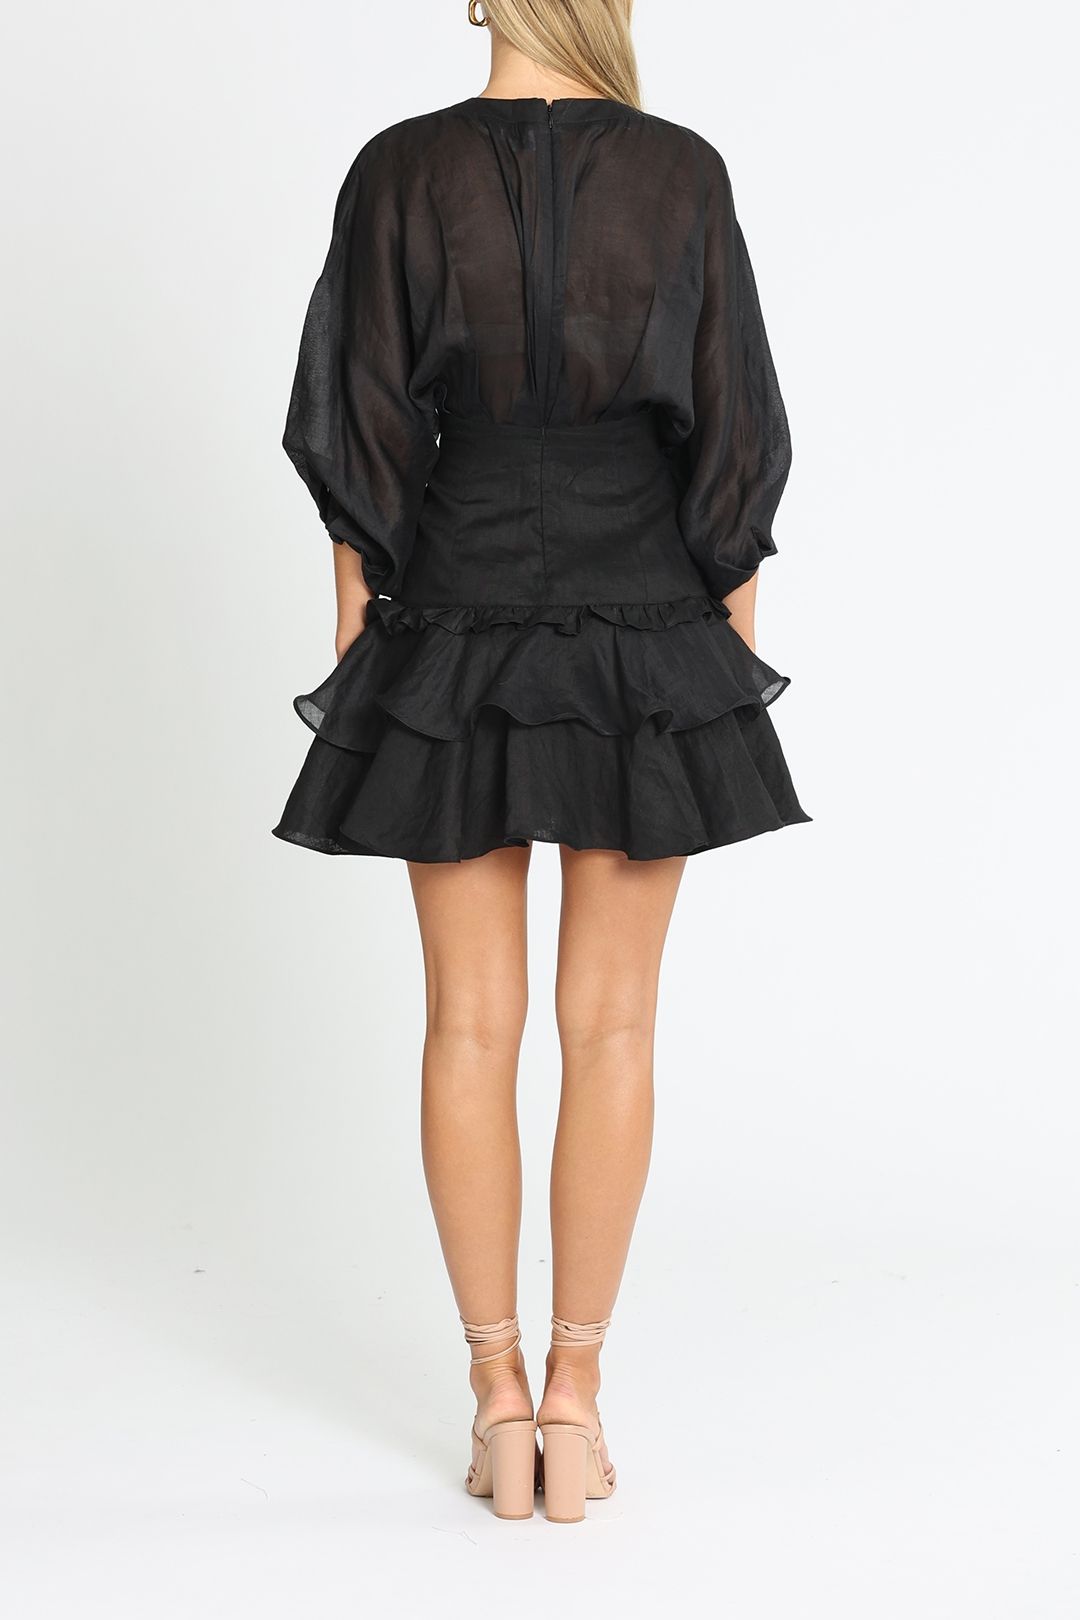 Joslin Elizabeth Linen Ramie Mini Dress Black V Neck